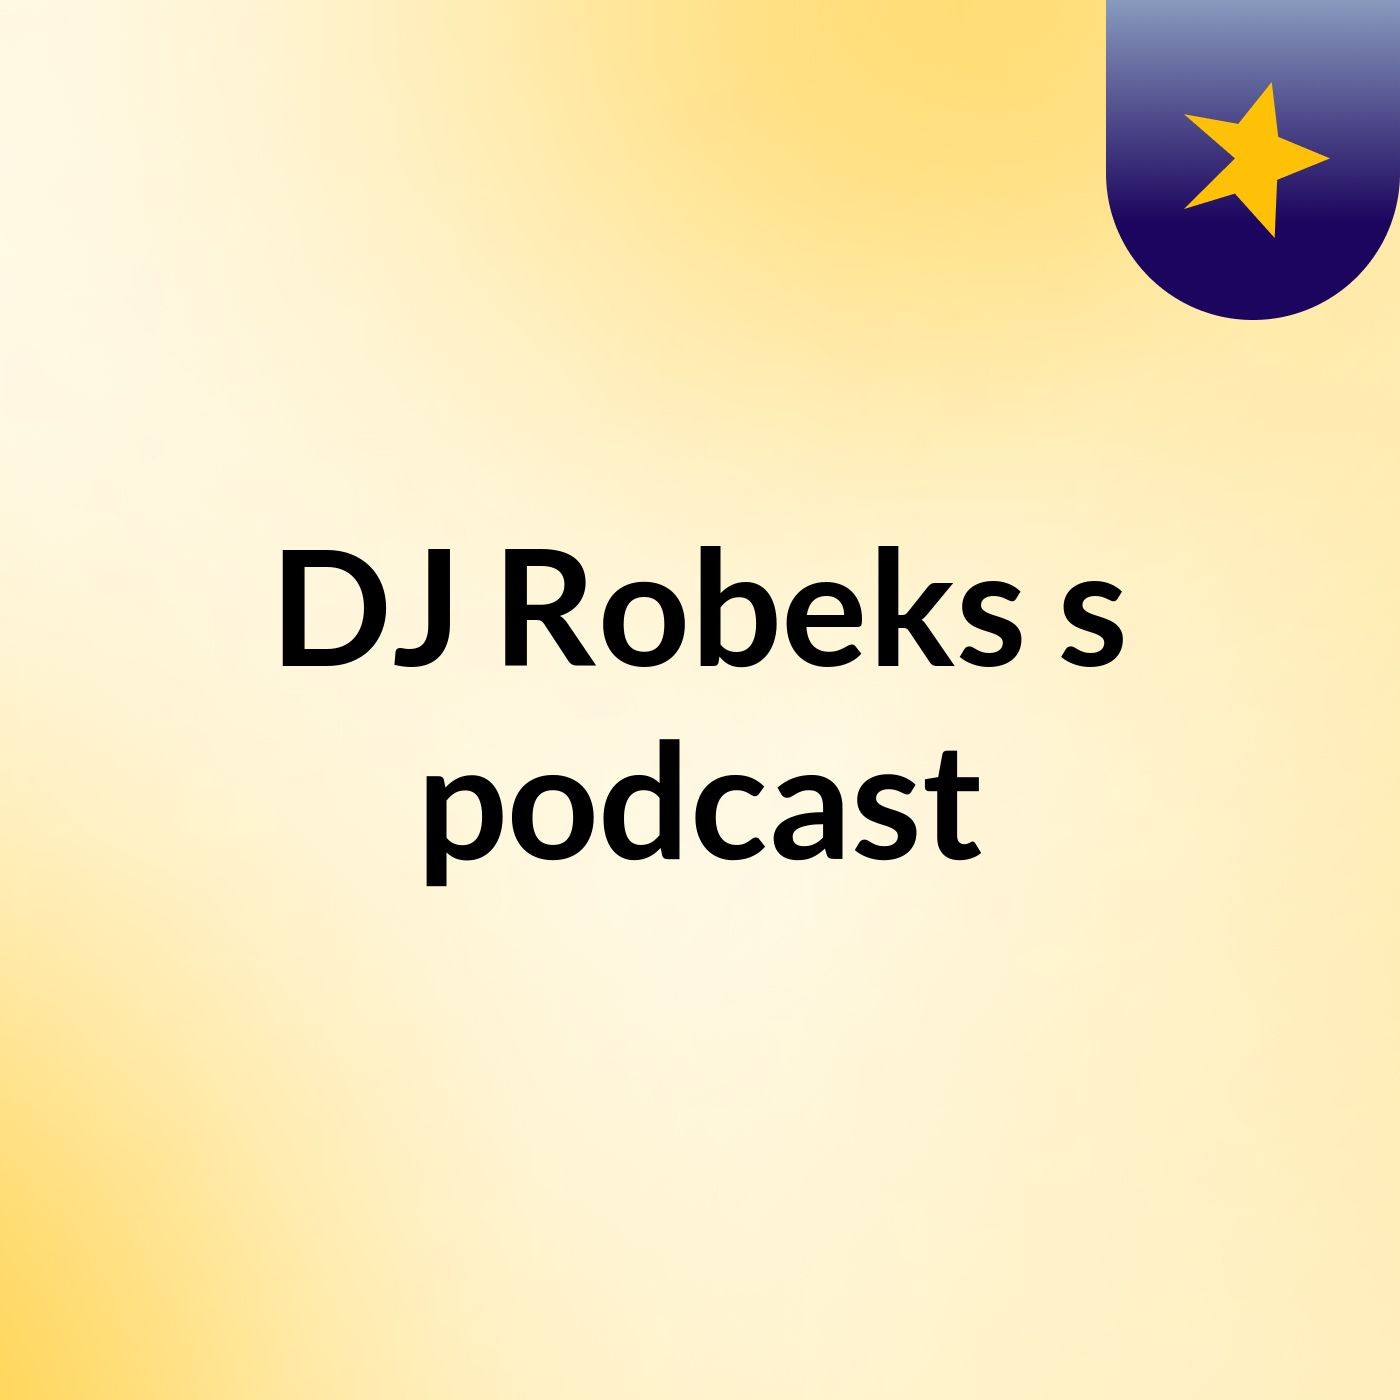 Episode 4 - DJ Robeks's podcast